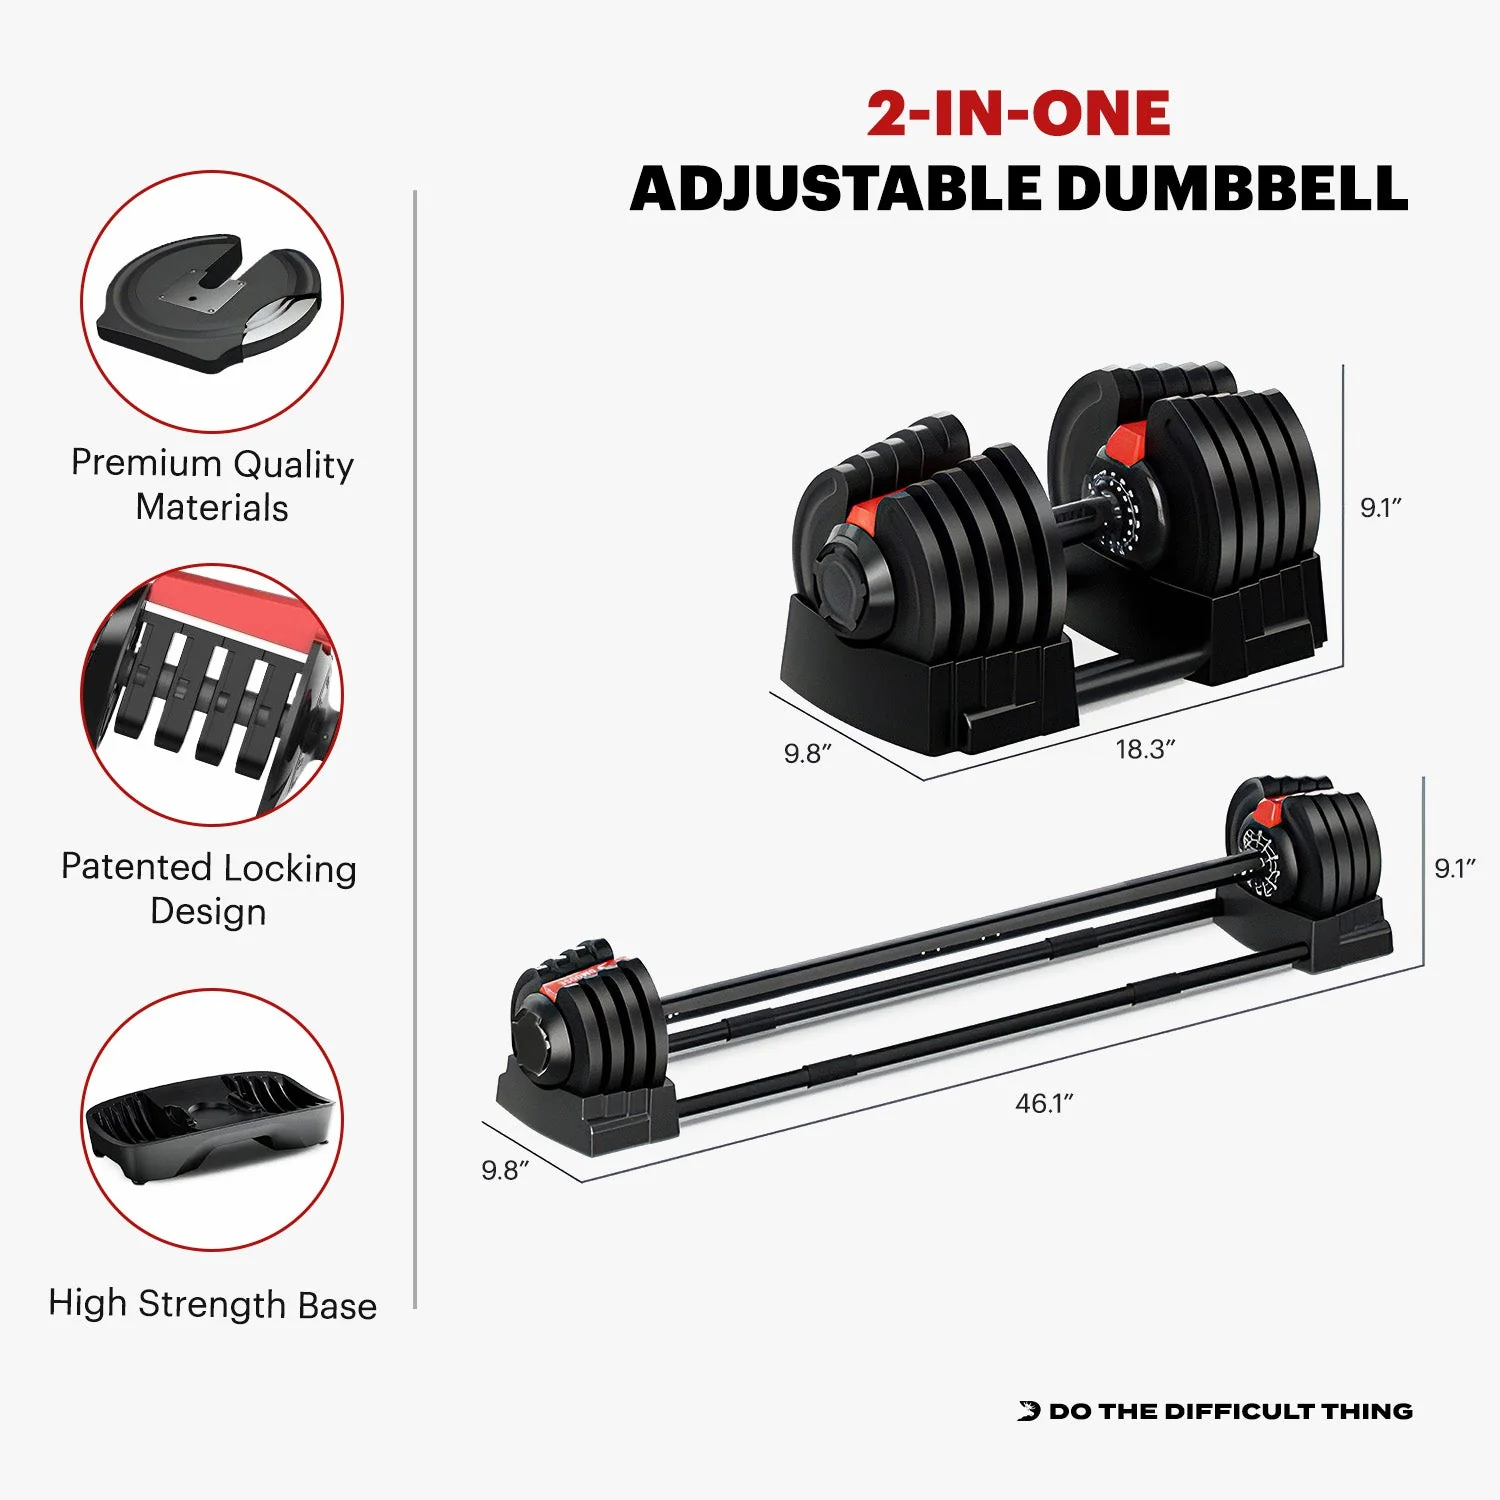 DMOOSE 2-in-1 Adjustable Dumbbell & Barbell 90 lb Set, 1 Dumbbell / 1 Barbell, Black A2